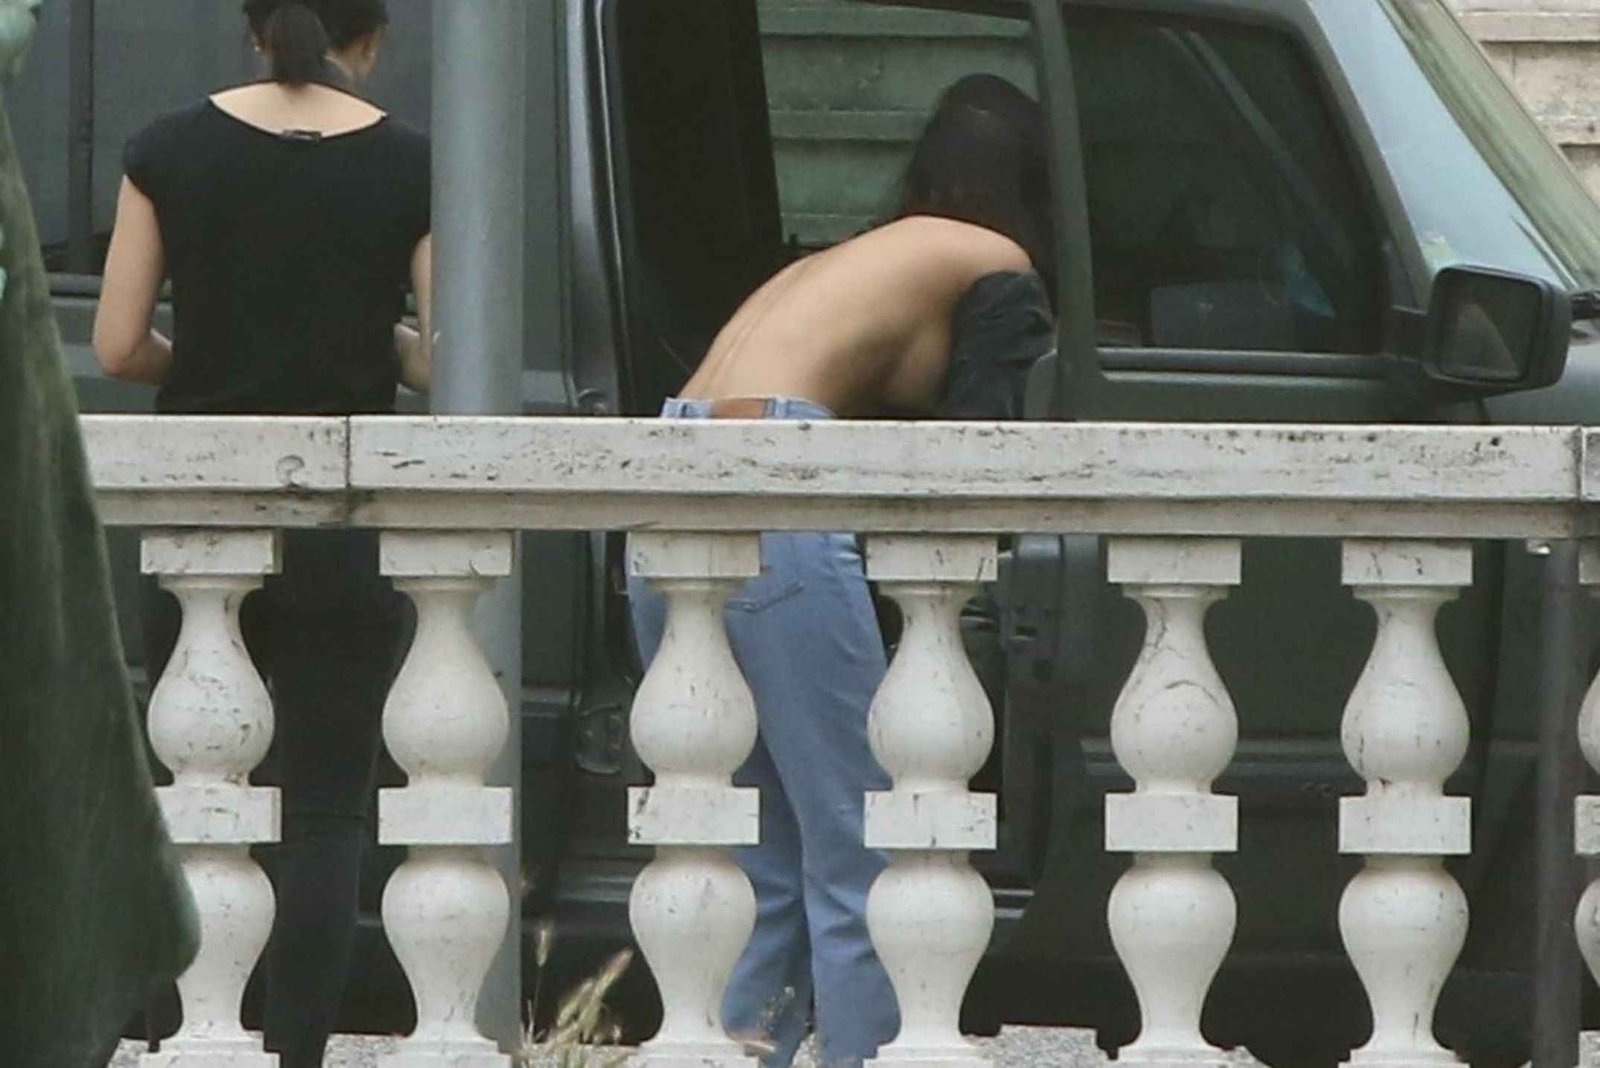 Rocio Munoz Morales surprise seins nus à Rome